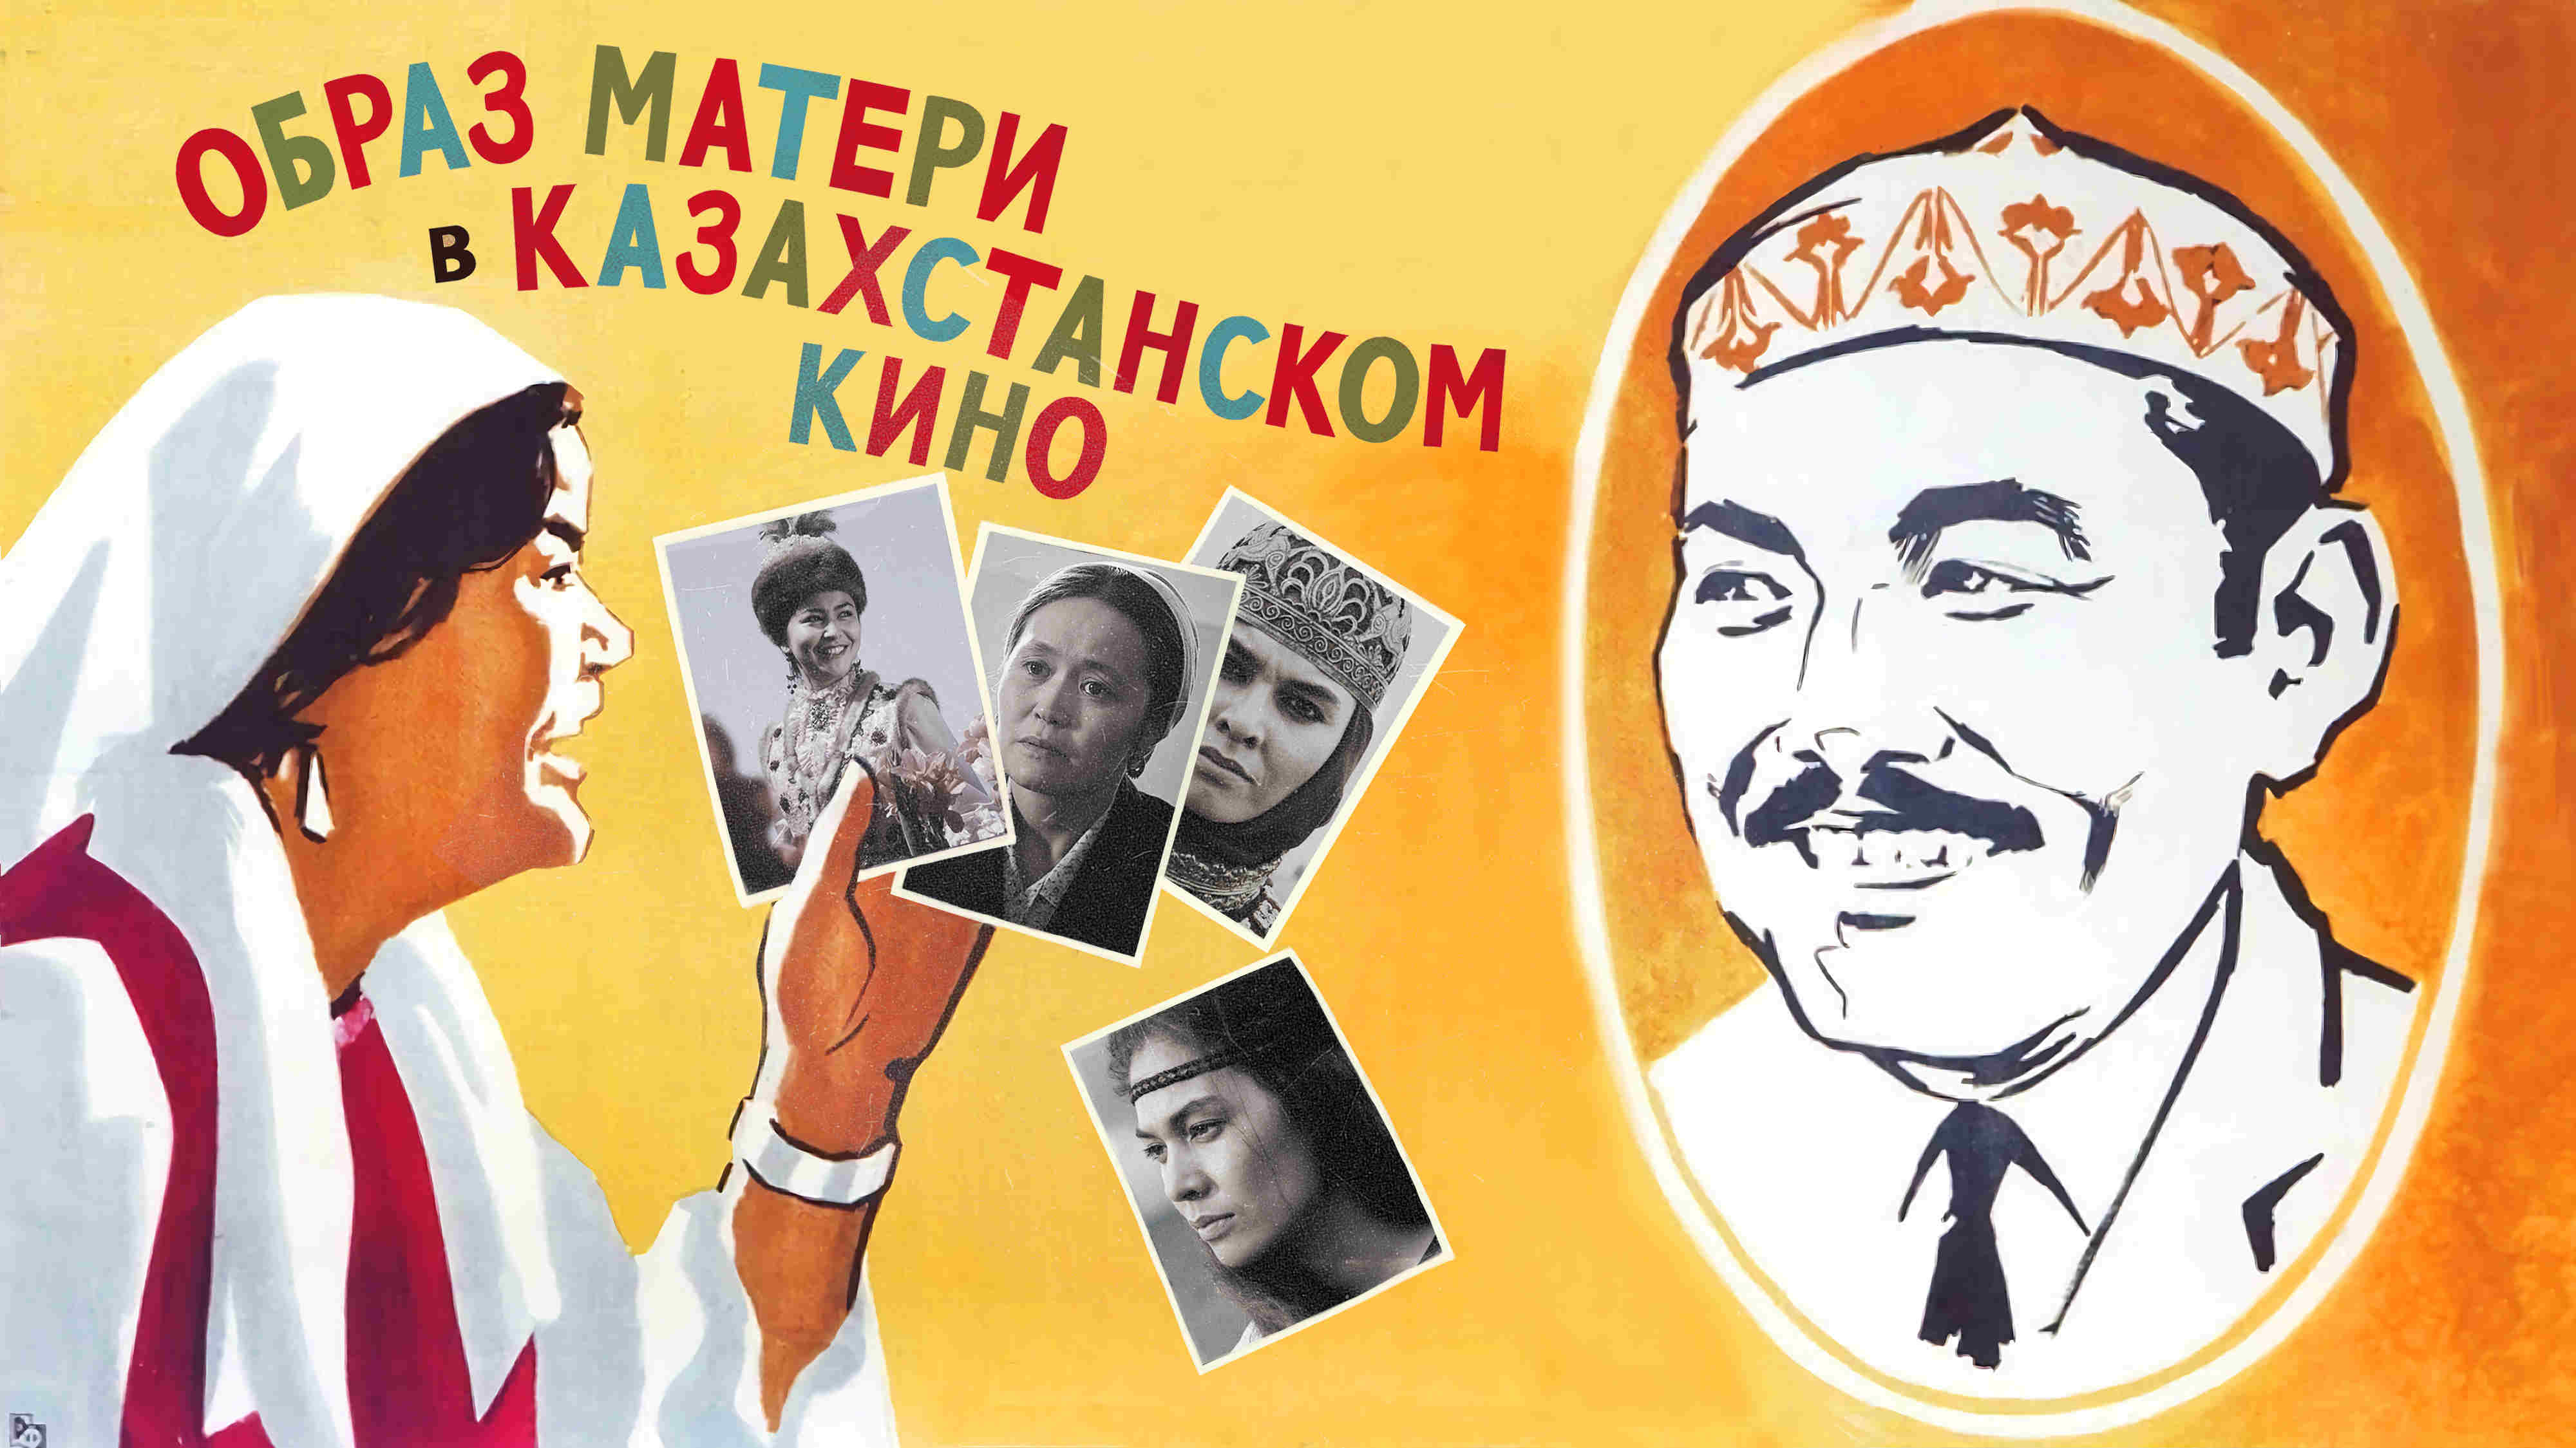 Как менялся образ матери в казахстанском кино 